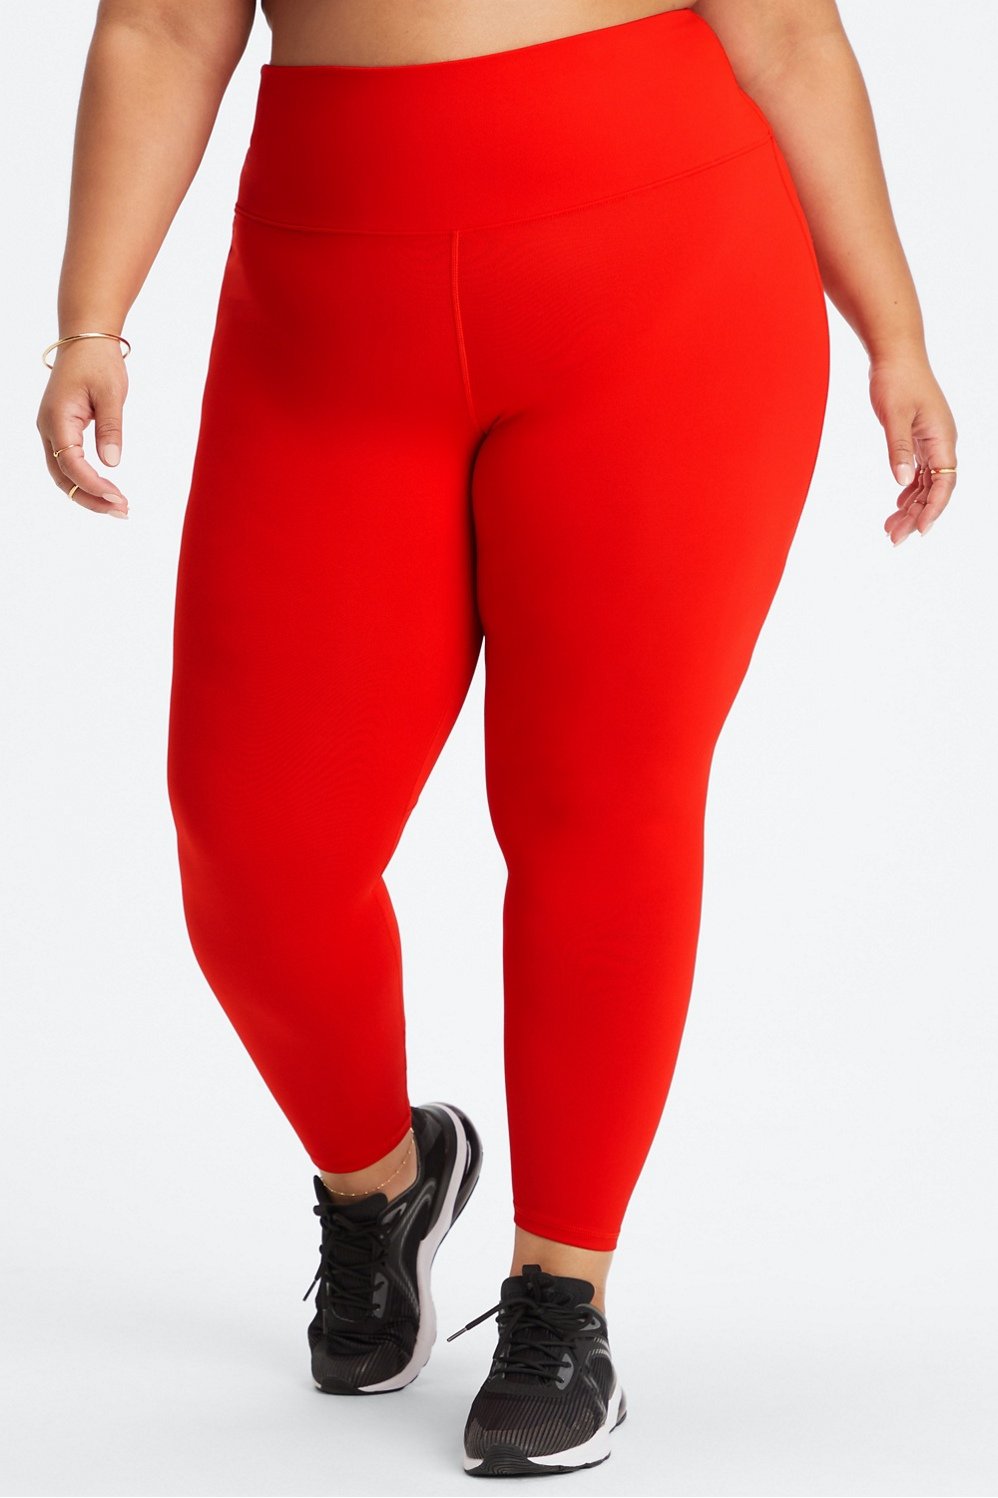 XS red fabletics leggings #leggings #redleggings - Depop